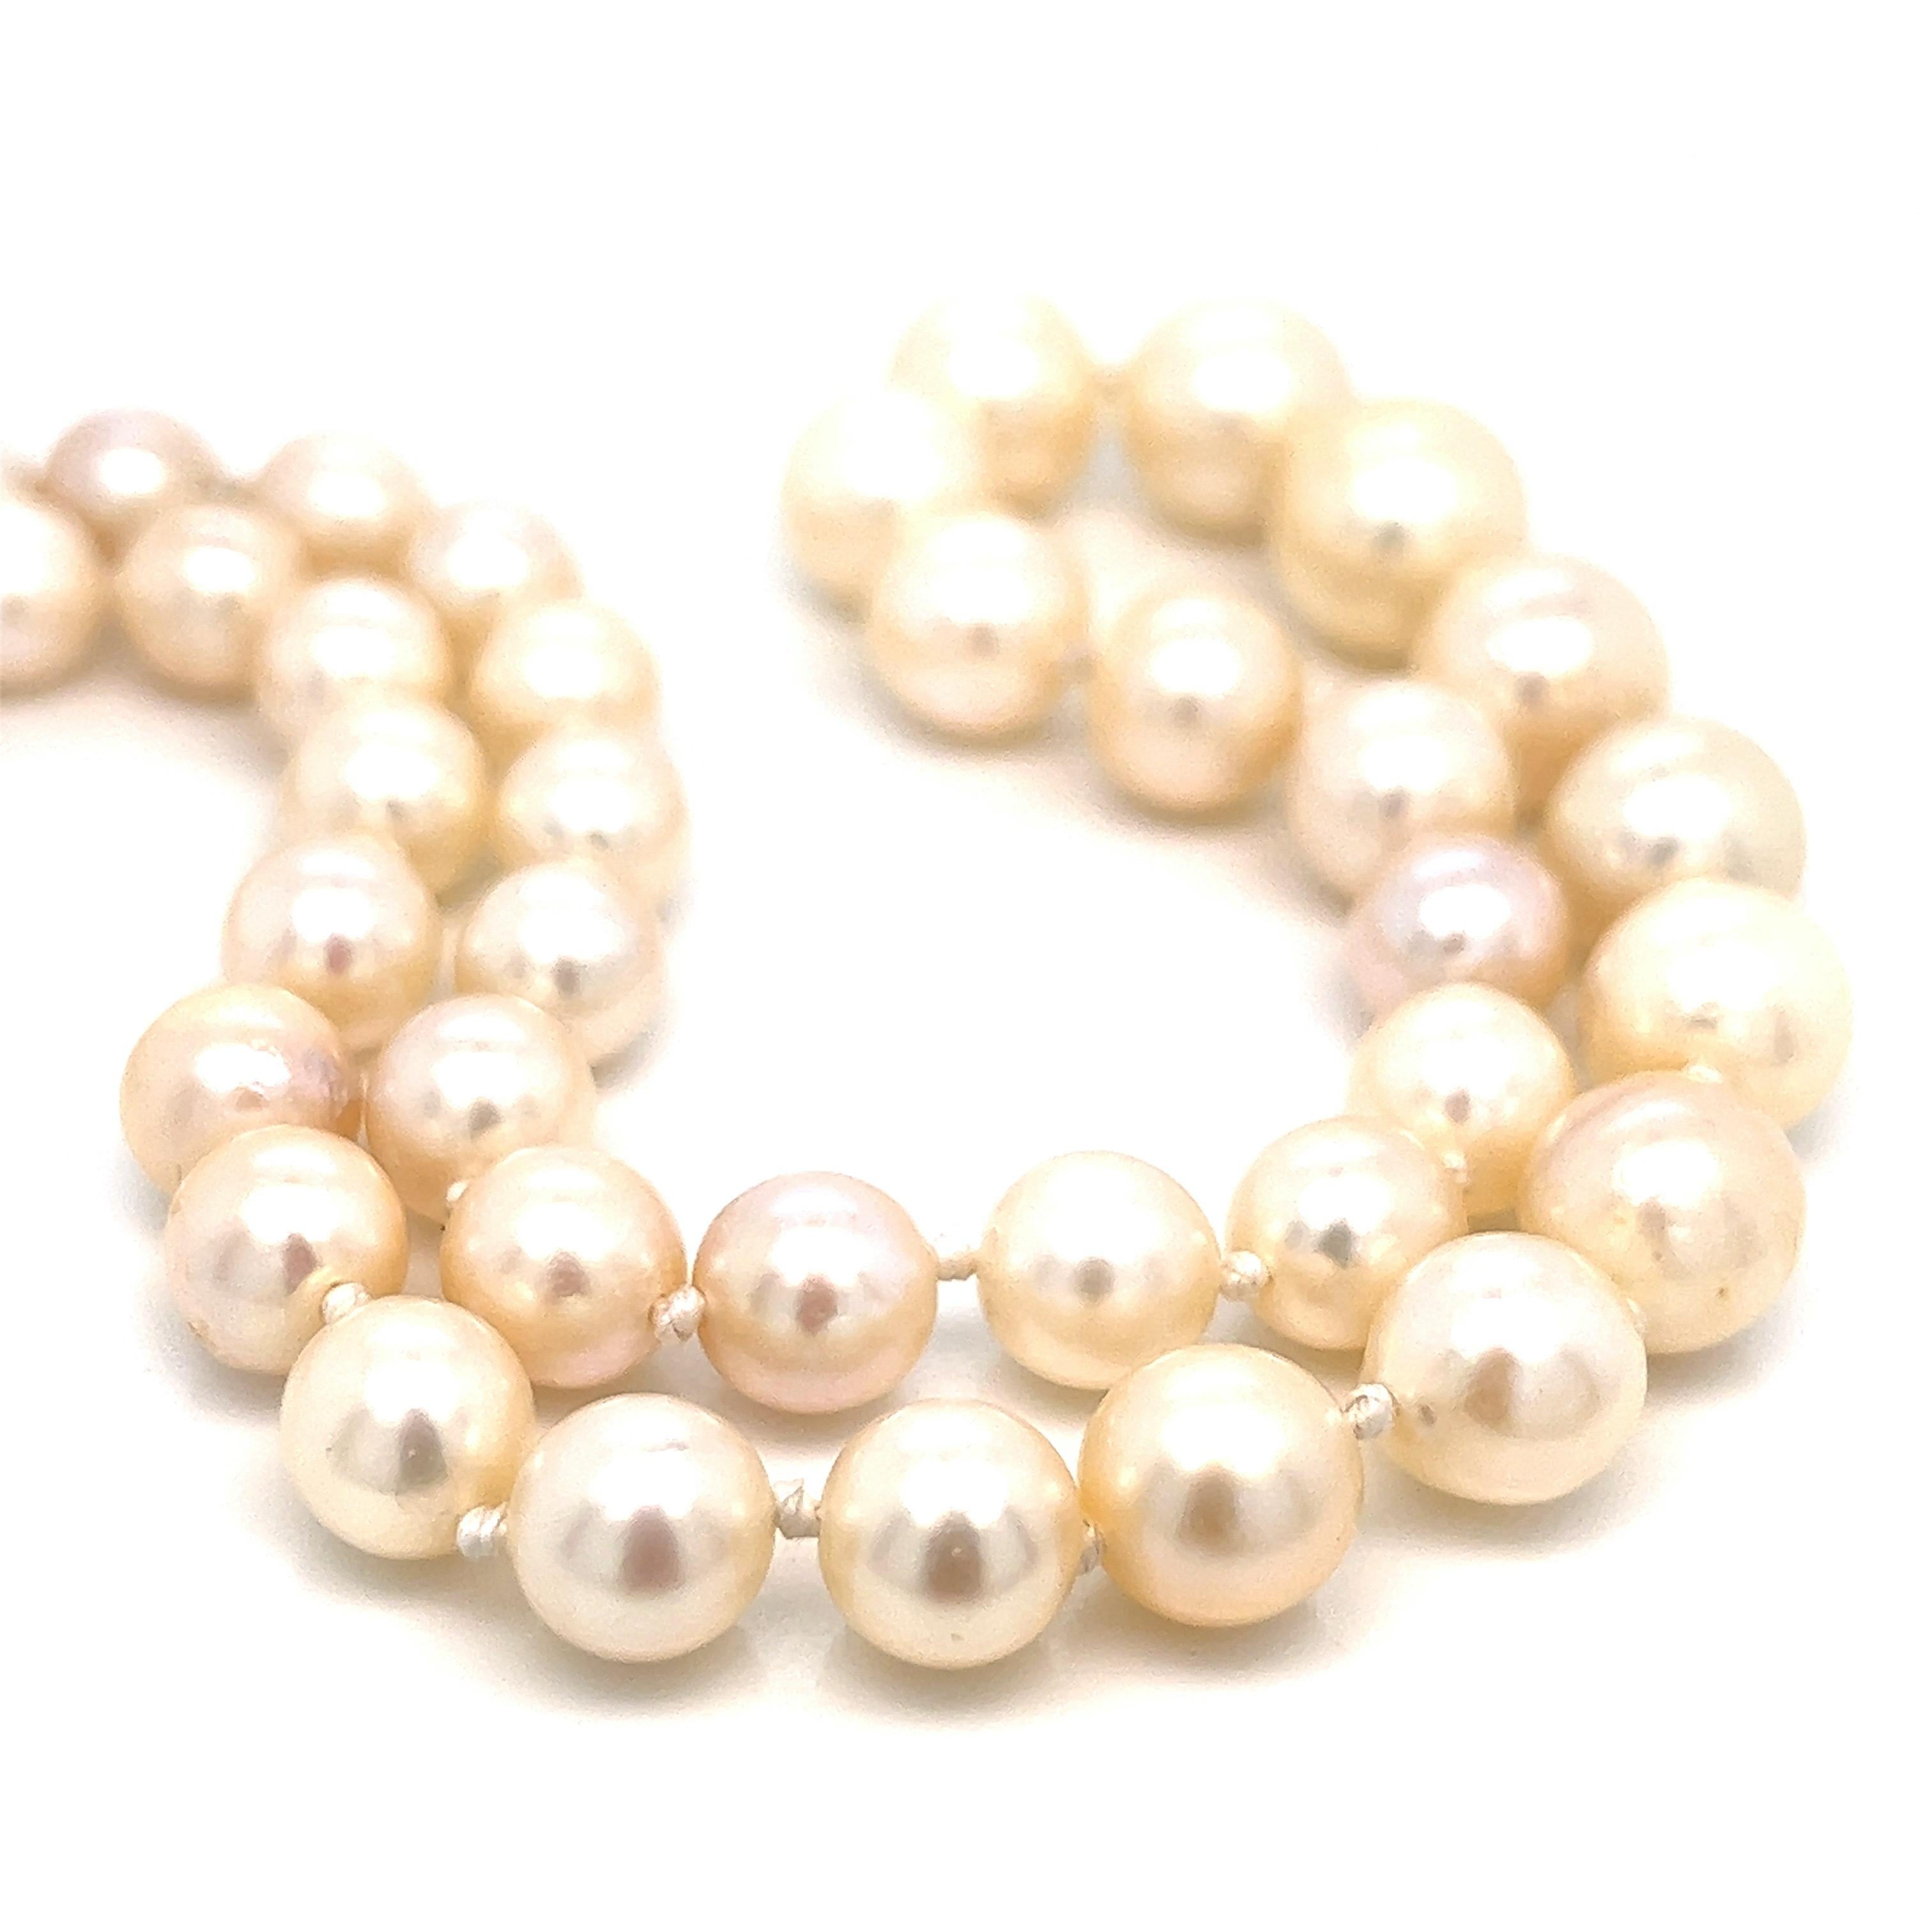 Halskette aus Platin, Perlen und Diamanten 

Perlenstrang mit Perlen unterschiedlicher Größe, ein Diamant in Marquiseform von 0,50 Karat, Verschluss im Art-déco-Stil

Abmessungen: Länge 16,5 Zoll 
Gesamtgewicht: 34,8 Gramm
